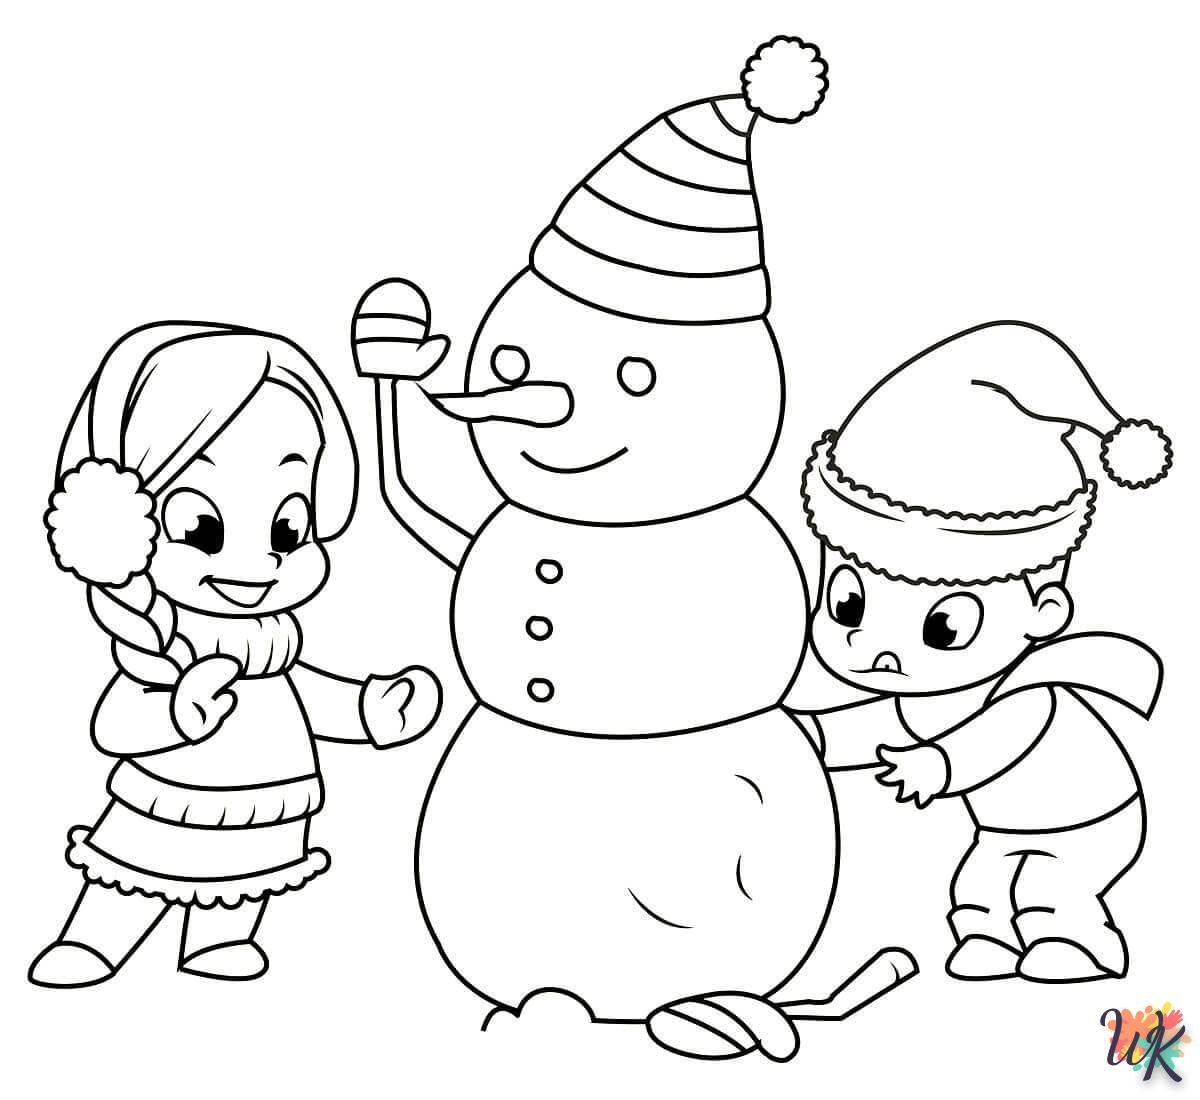 Dibujos para Colorear Muneco de nieve 38